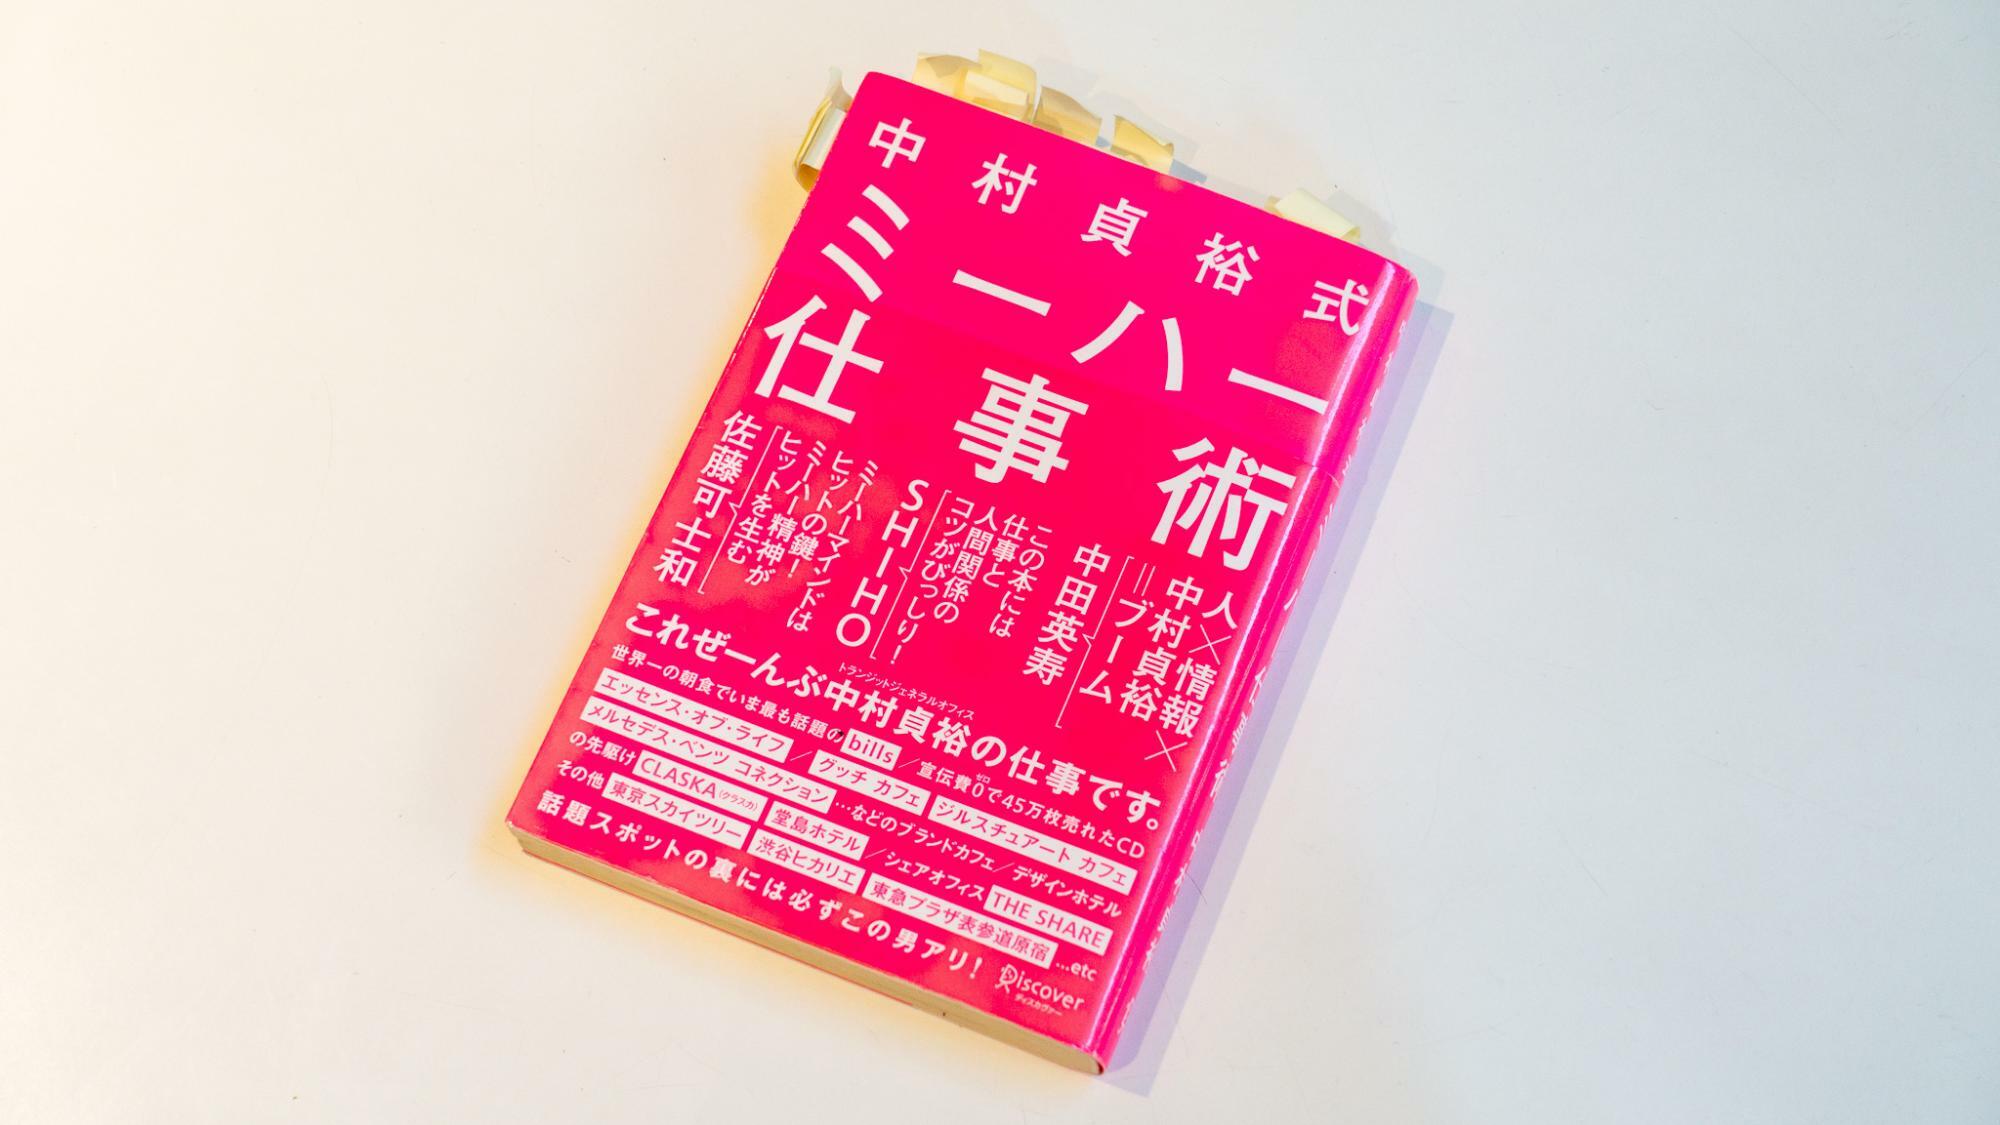 中村さんの著書『中村貞裕式 ミーハー仕事術』（ディスカヴァー･トゥエンティワン）。当時中村さんの考えに感銘を受けた筆者は本に大量の付箋を貼っている